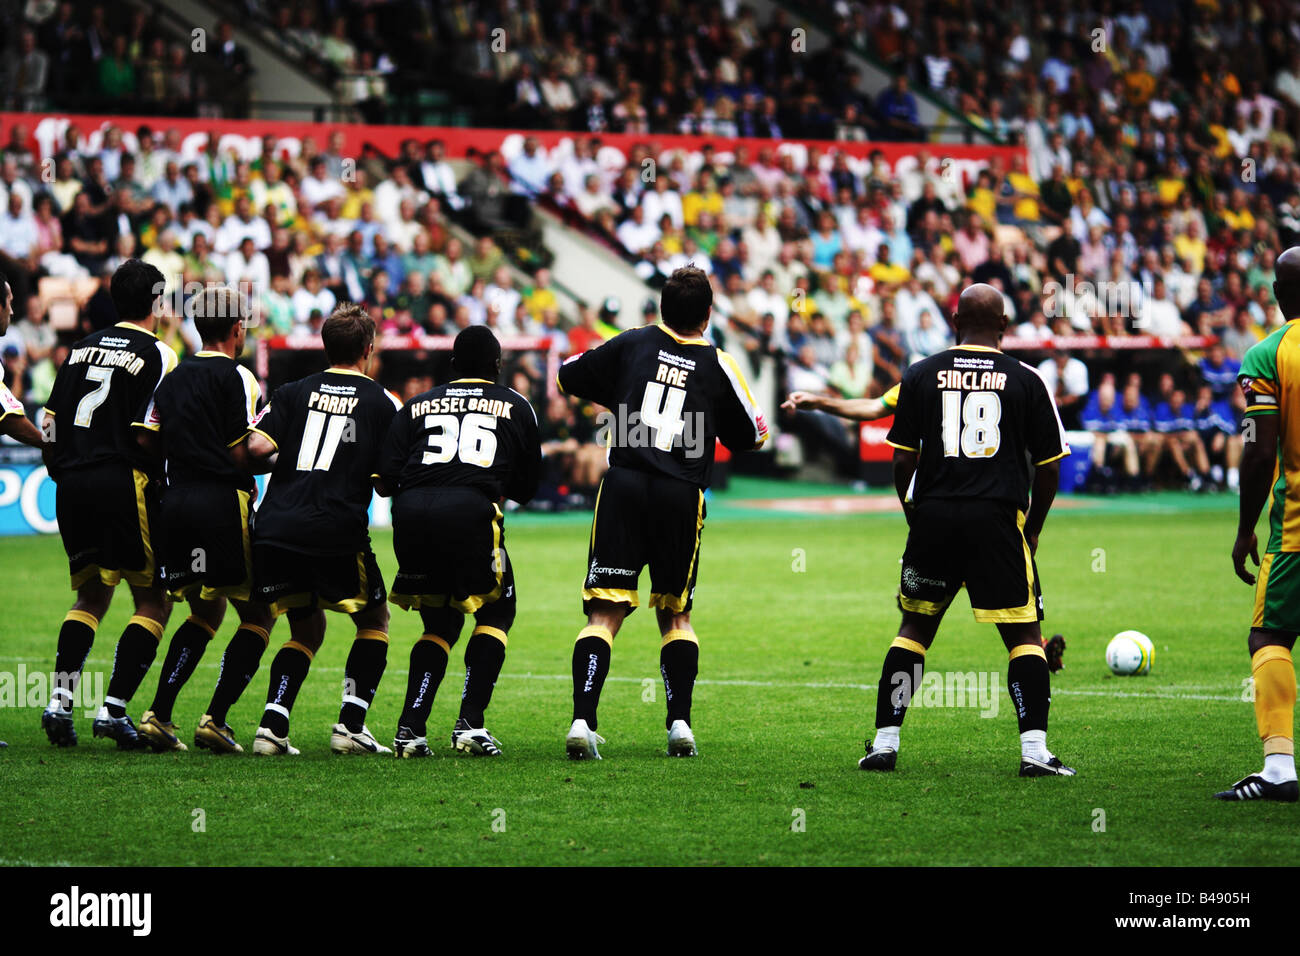 Fußball-Fußball-Team einen Freistoß zu verteidigen Stockfotografie - Alamy